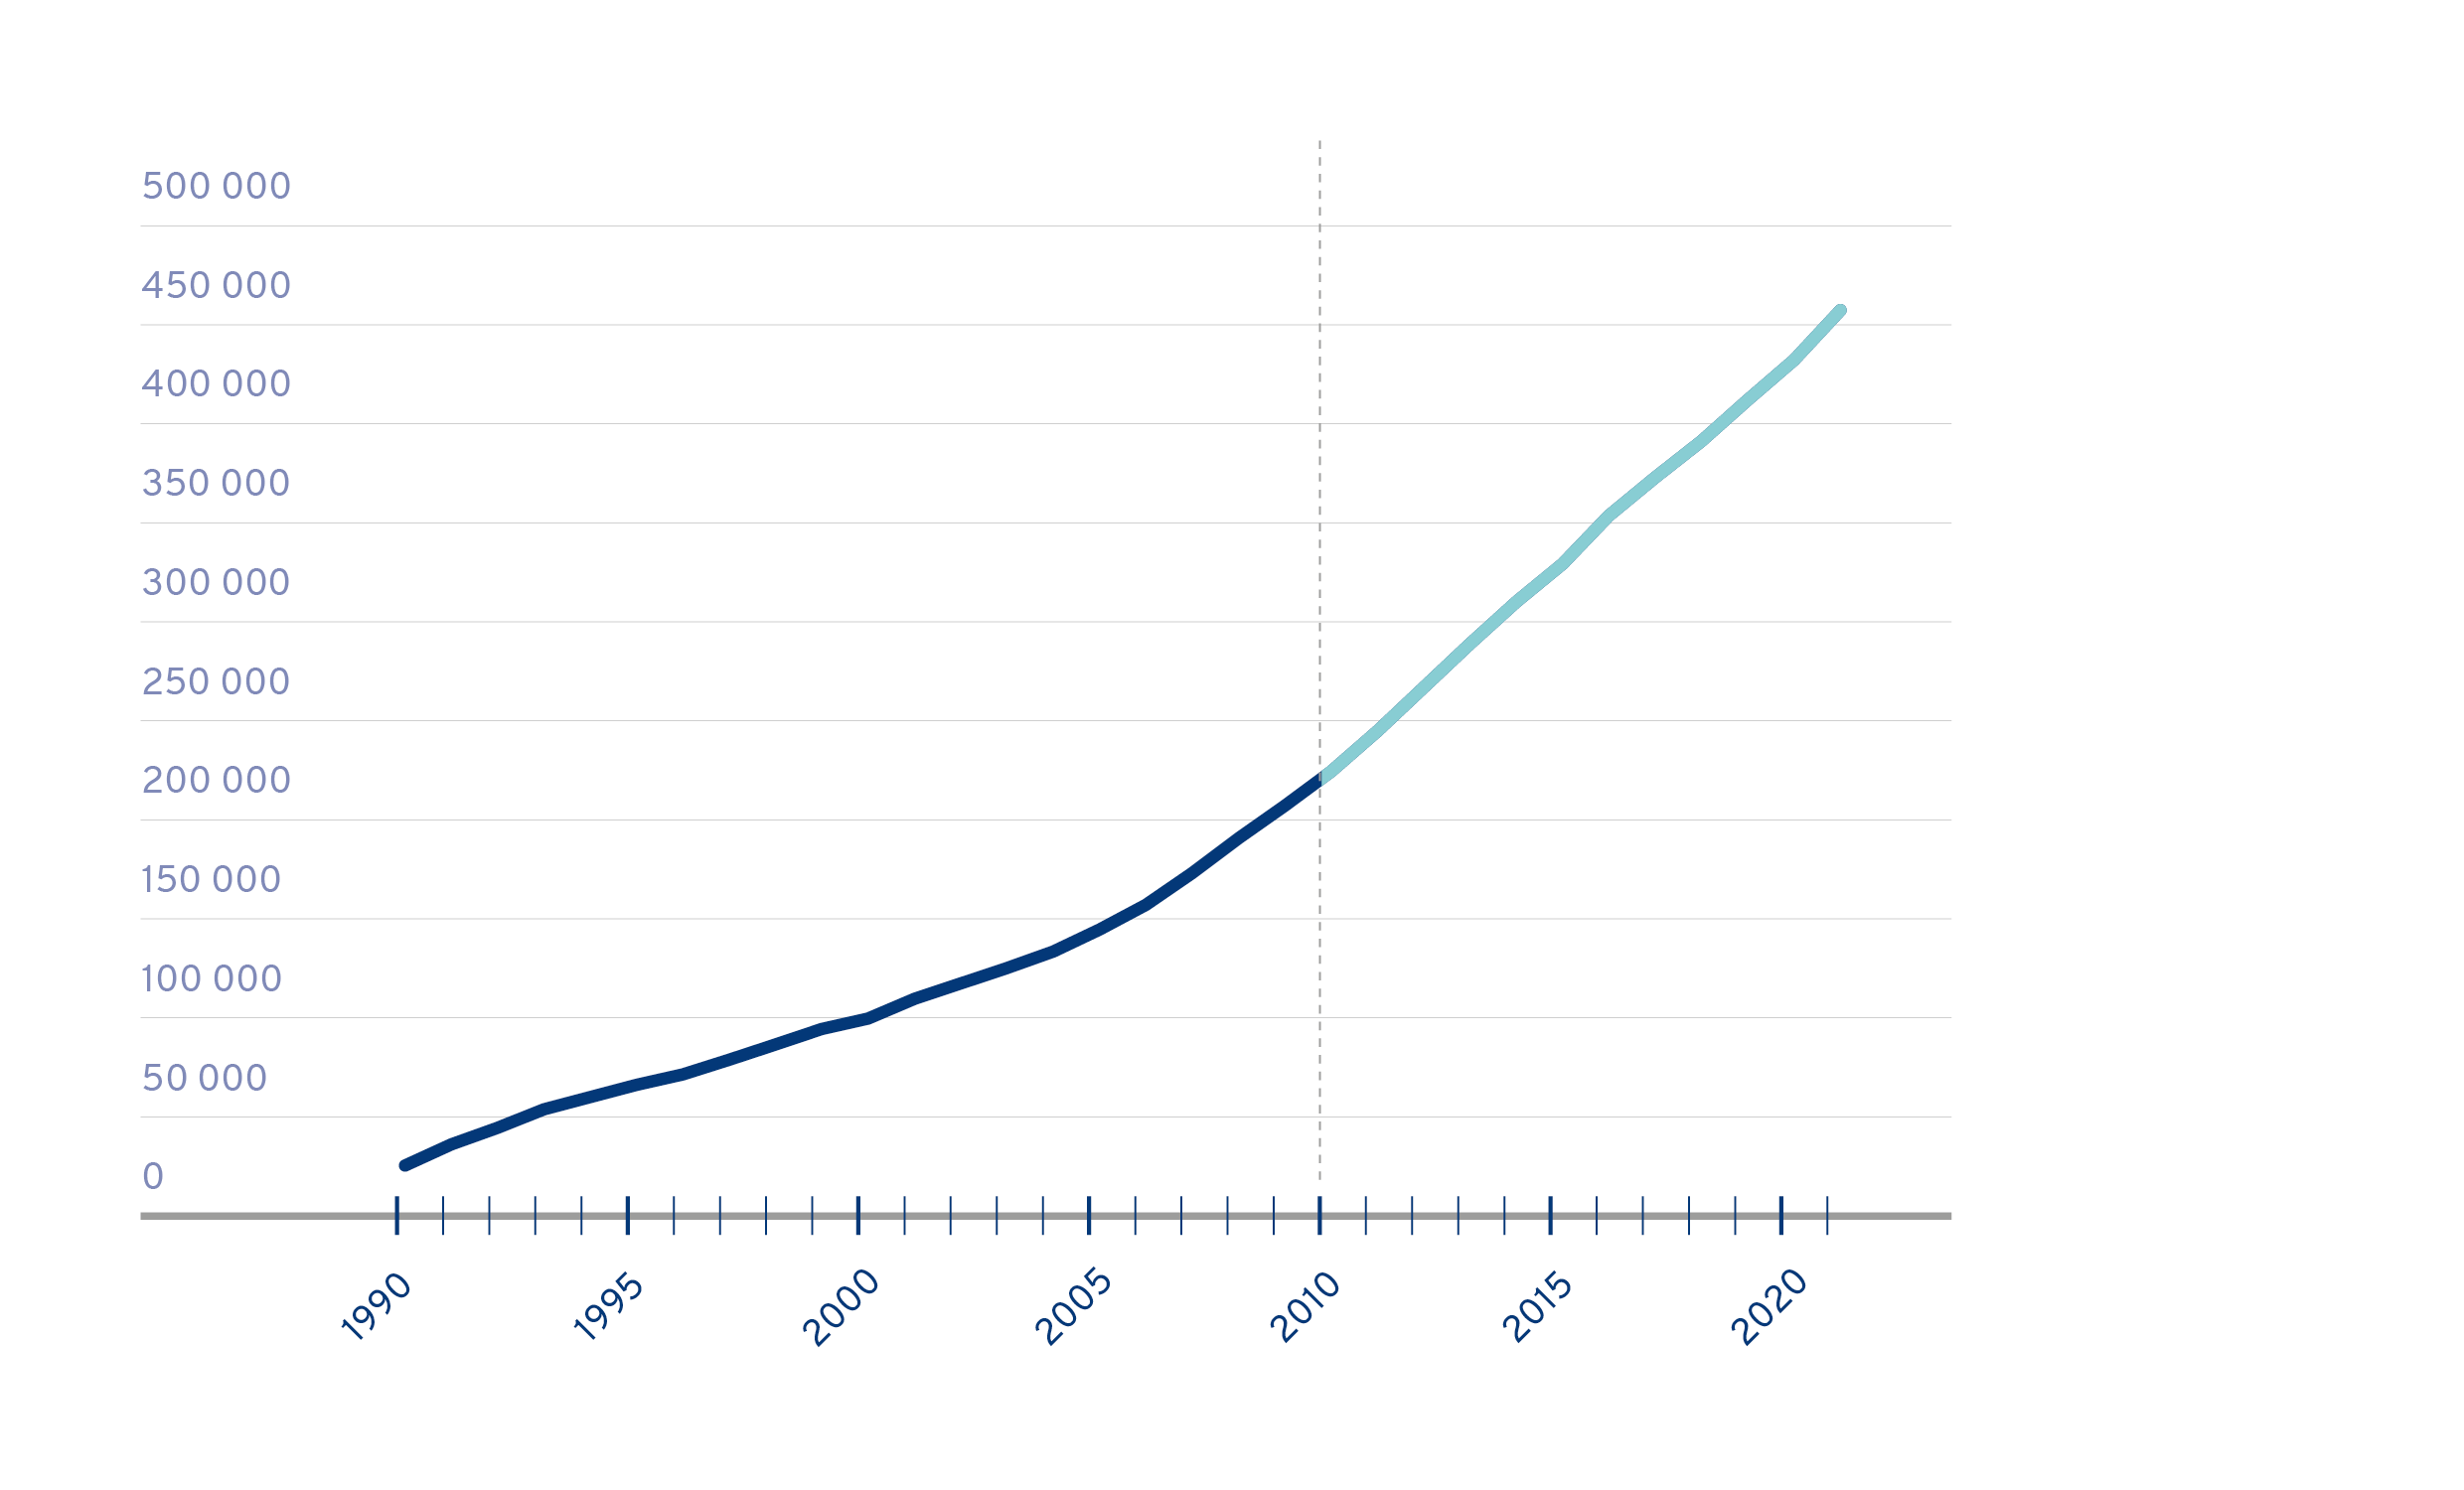 Graafi, joka kuvaa vieraskielisten määrän kasvua Suomessa vuosina 1990-2020. Vieraskielisten määrä Suomessa on kasvanut merkittävästi 1990-luvulta. Kasvu on kiihtynyt erityisesti 2010-luvulta alkaen. 